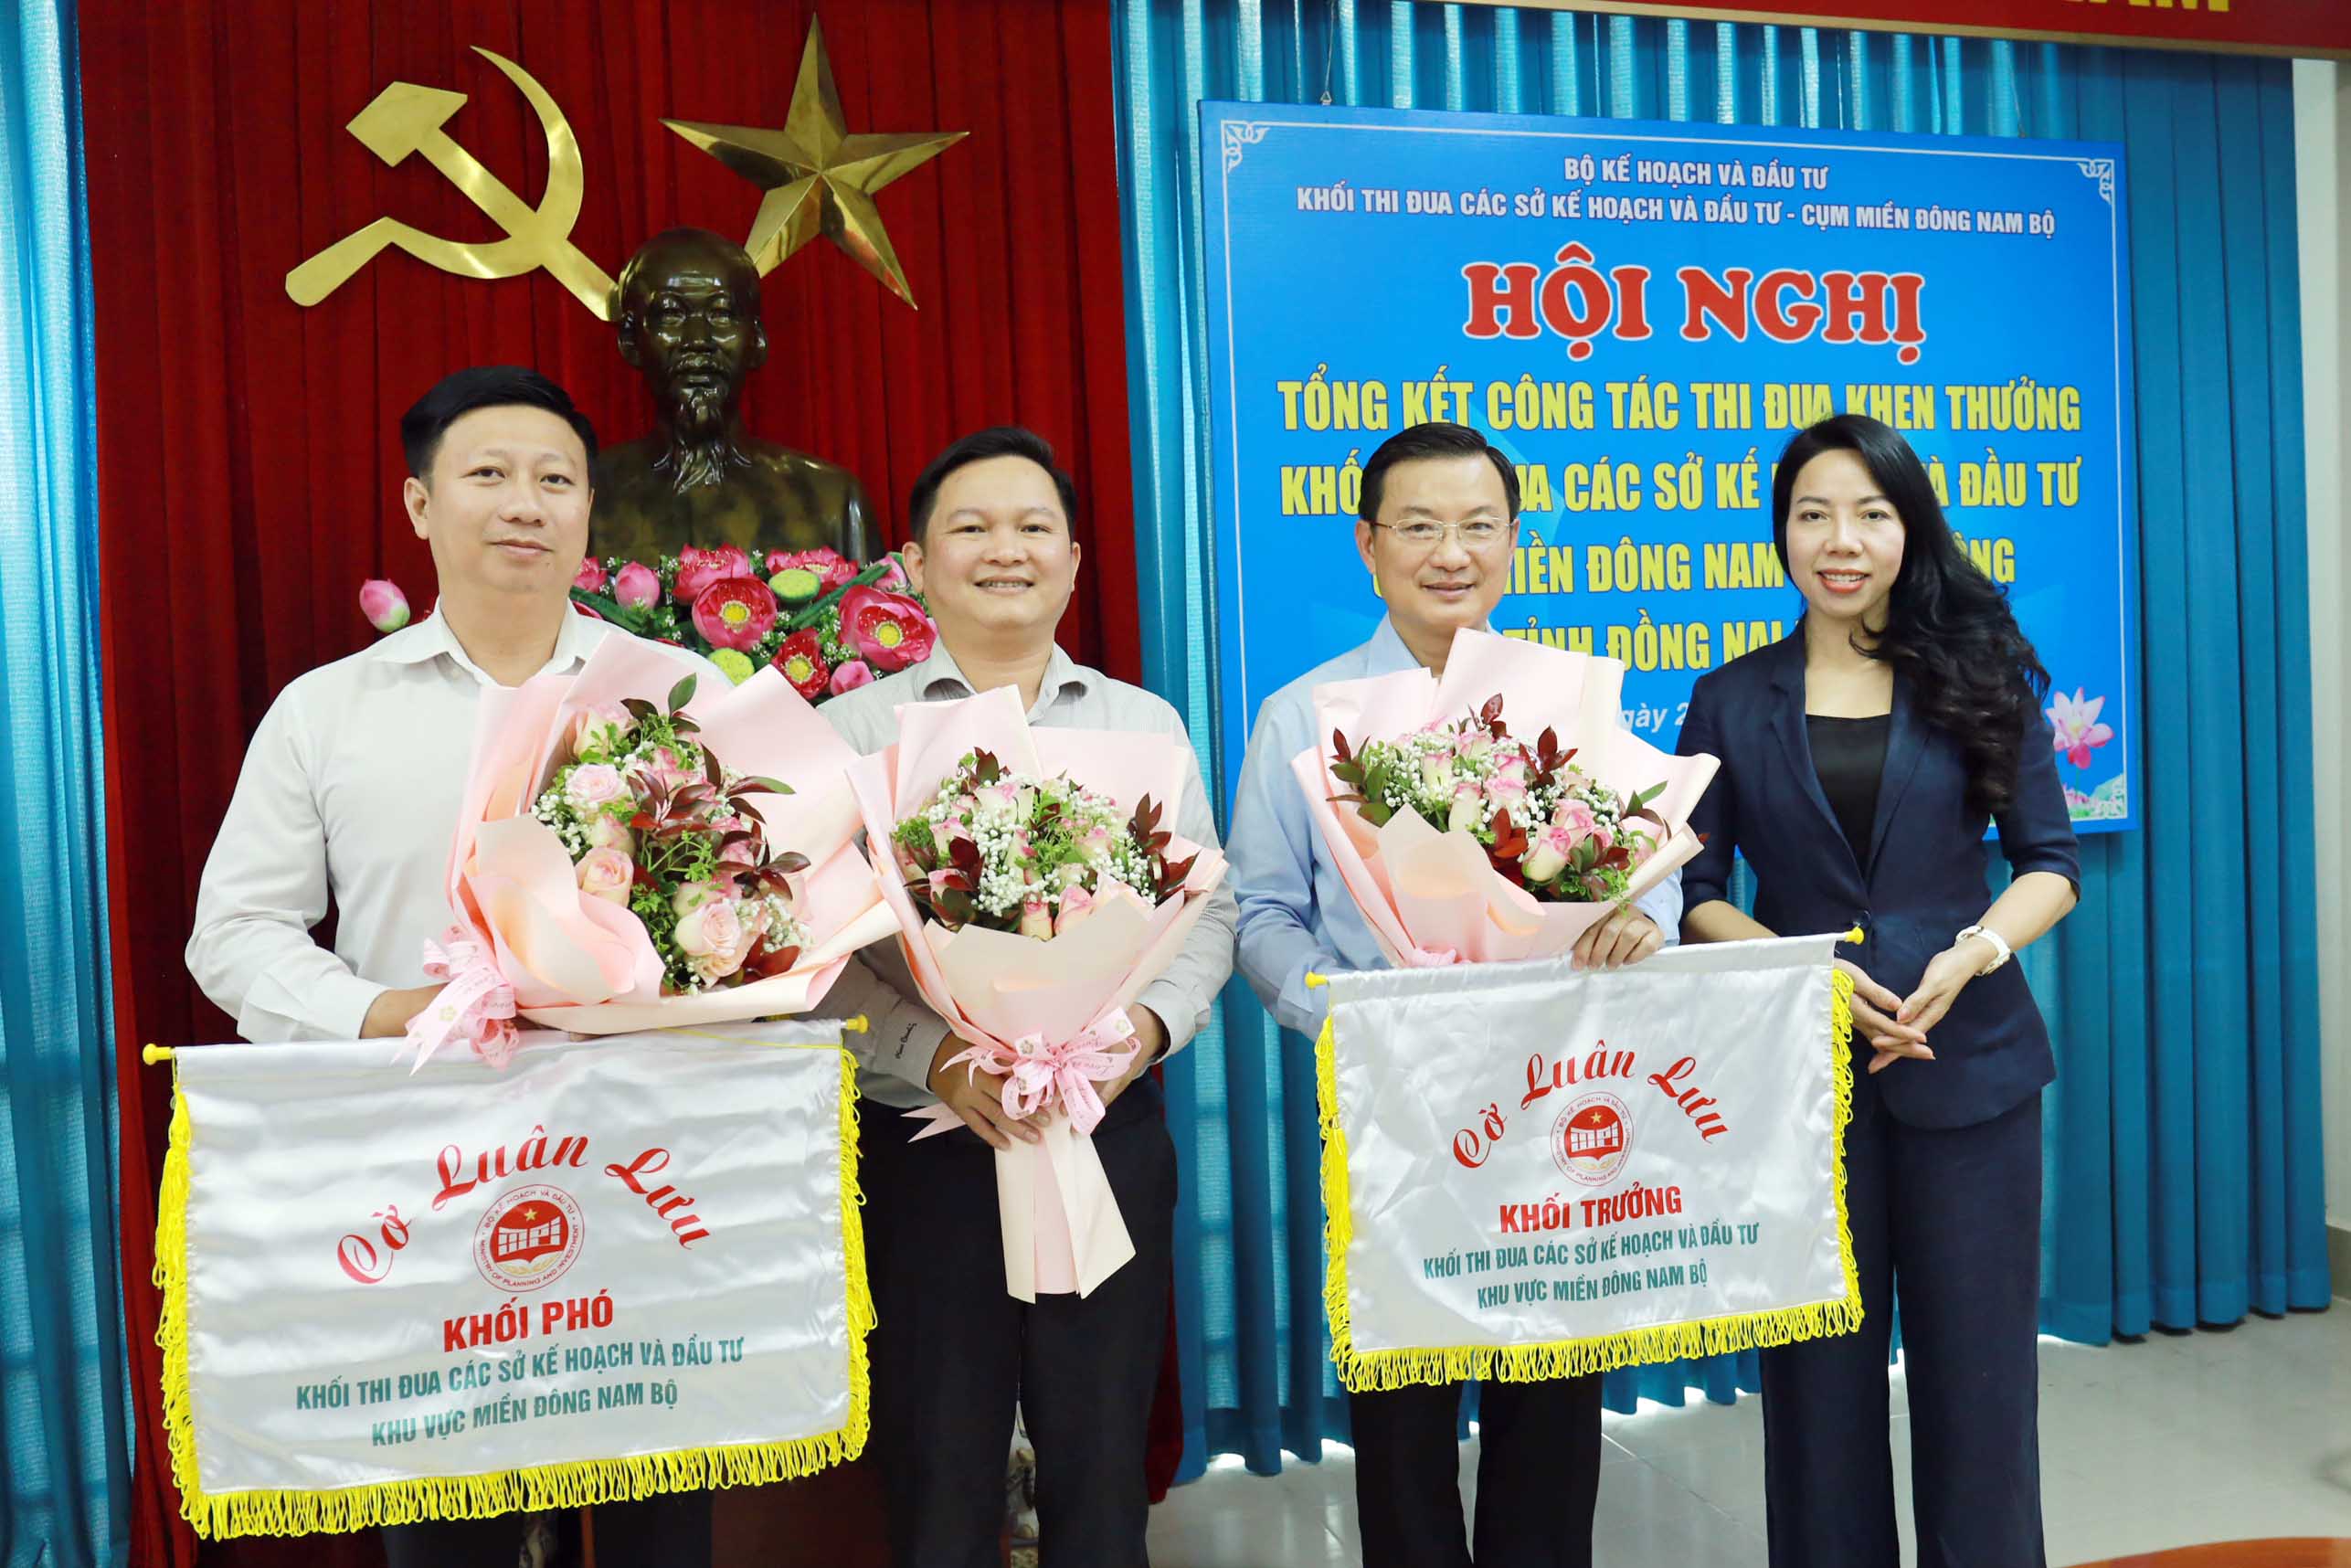 Ông Nguyễn Kiên Cường (ngoài cùng bên trái), Phó giám đốc Sở KHĐT tỉnh Tây Ninh nhận 